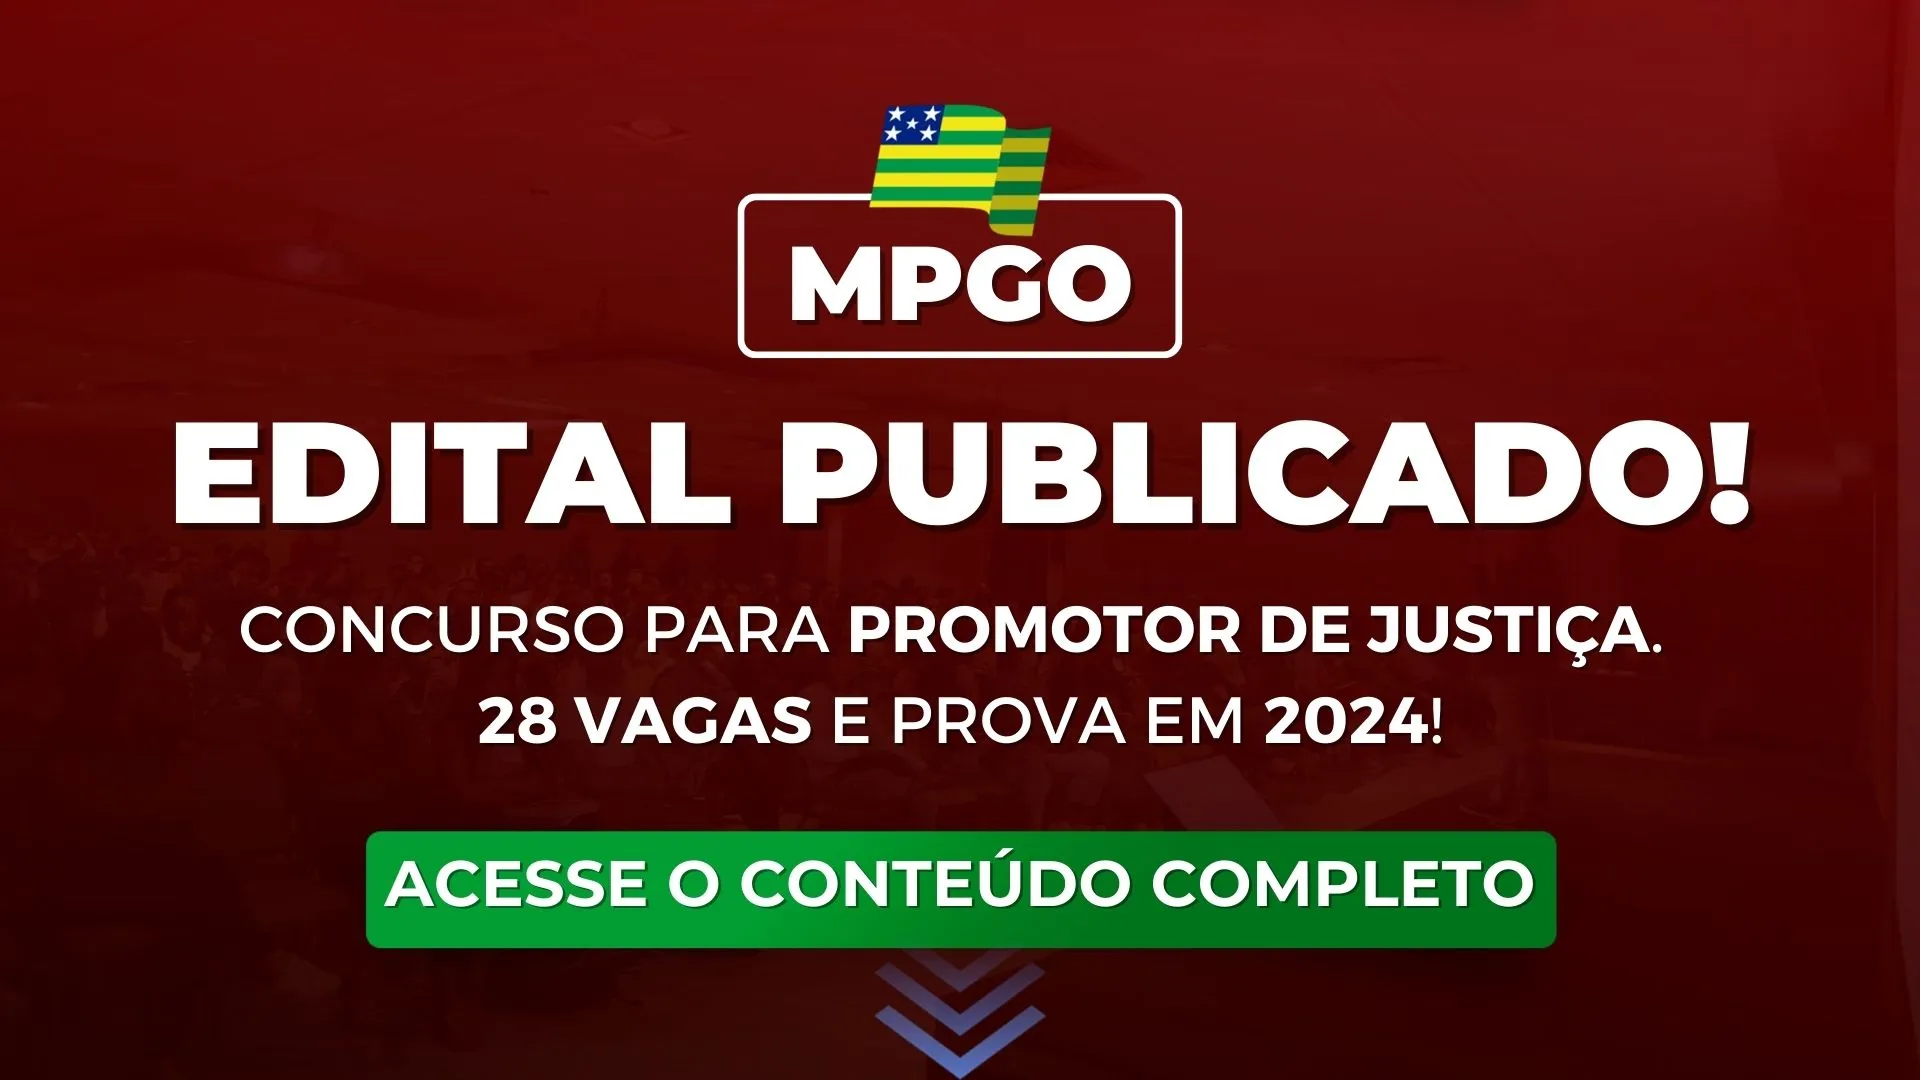 MPGO: Edital publicado para Promotor de Justiça! Concurso com 28 vagas e prova em 2024